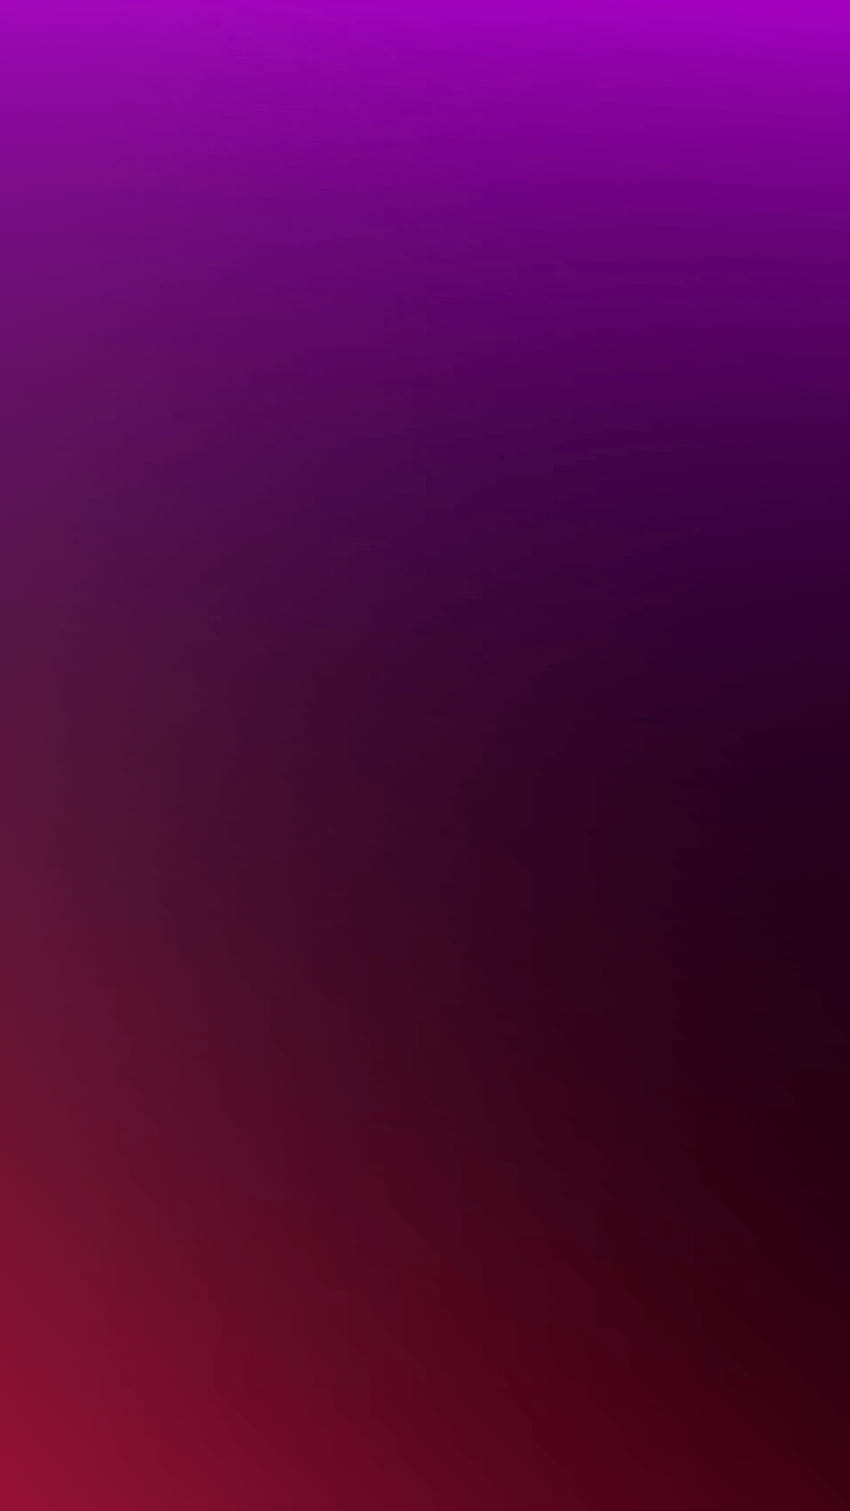 1080x1920 Fioletowy Gradient dla iPhone 8, iPhone 7, czerwony karmazynowy gradient Tapeta na telefon HD